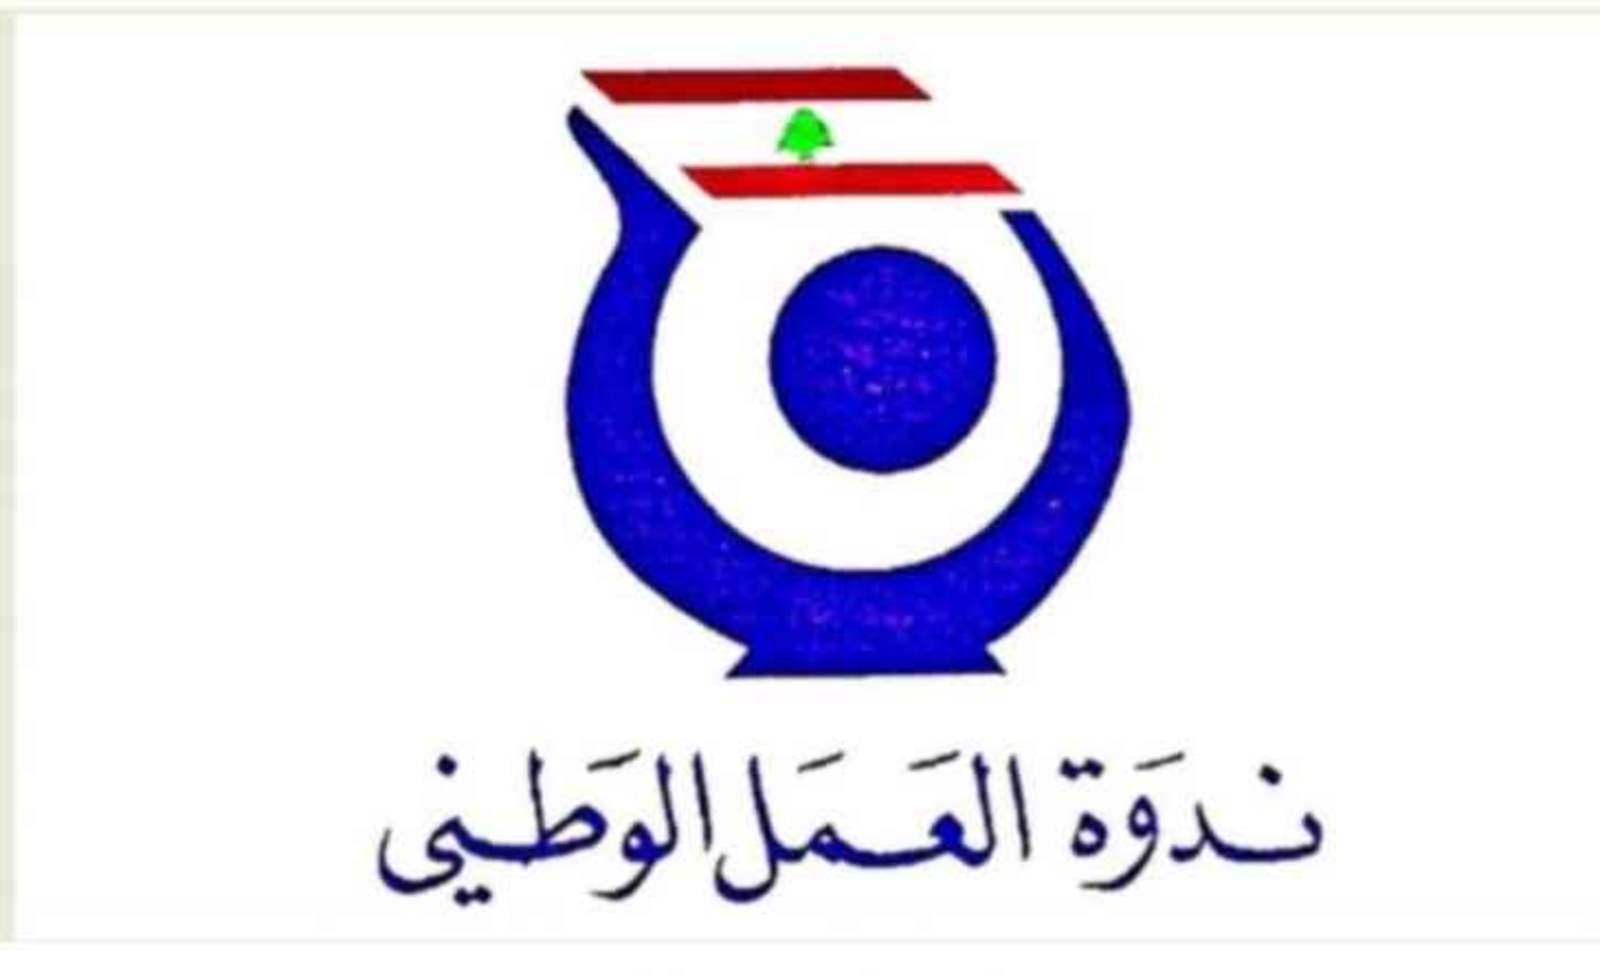 ندوة العمل الوطني : تحرير لبنان في 25 أيار 2000 هو استقلال لبنان الفعلي